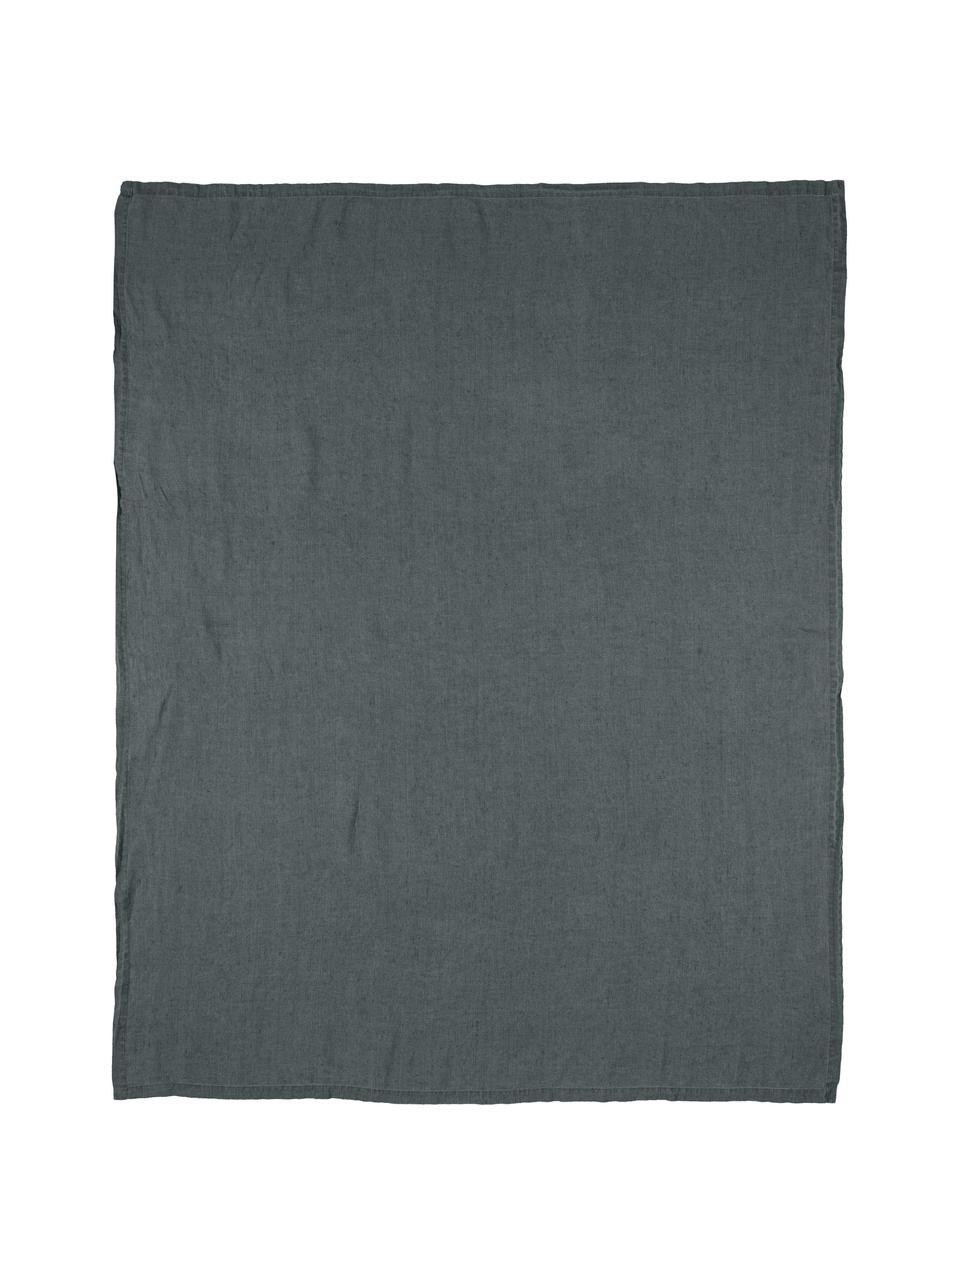 Mantel de lino Ruta, Gris, De 4 a 6 comensales (An 130 x L 170 cm)